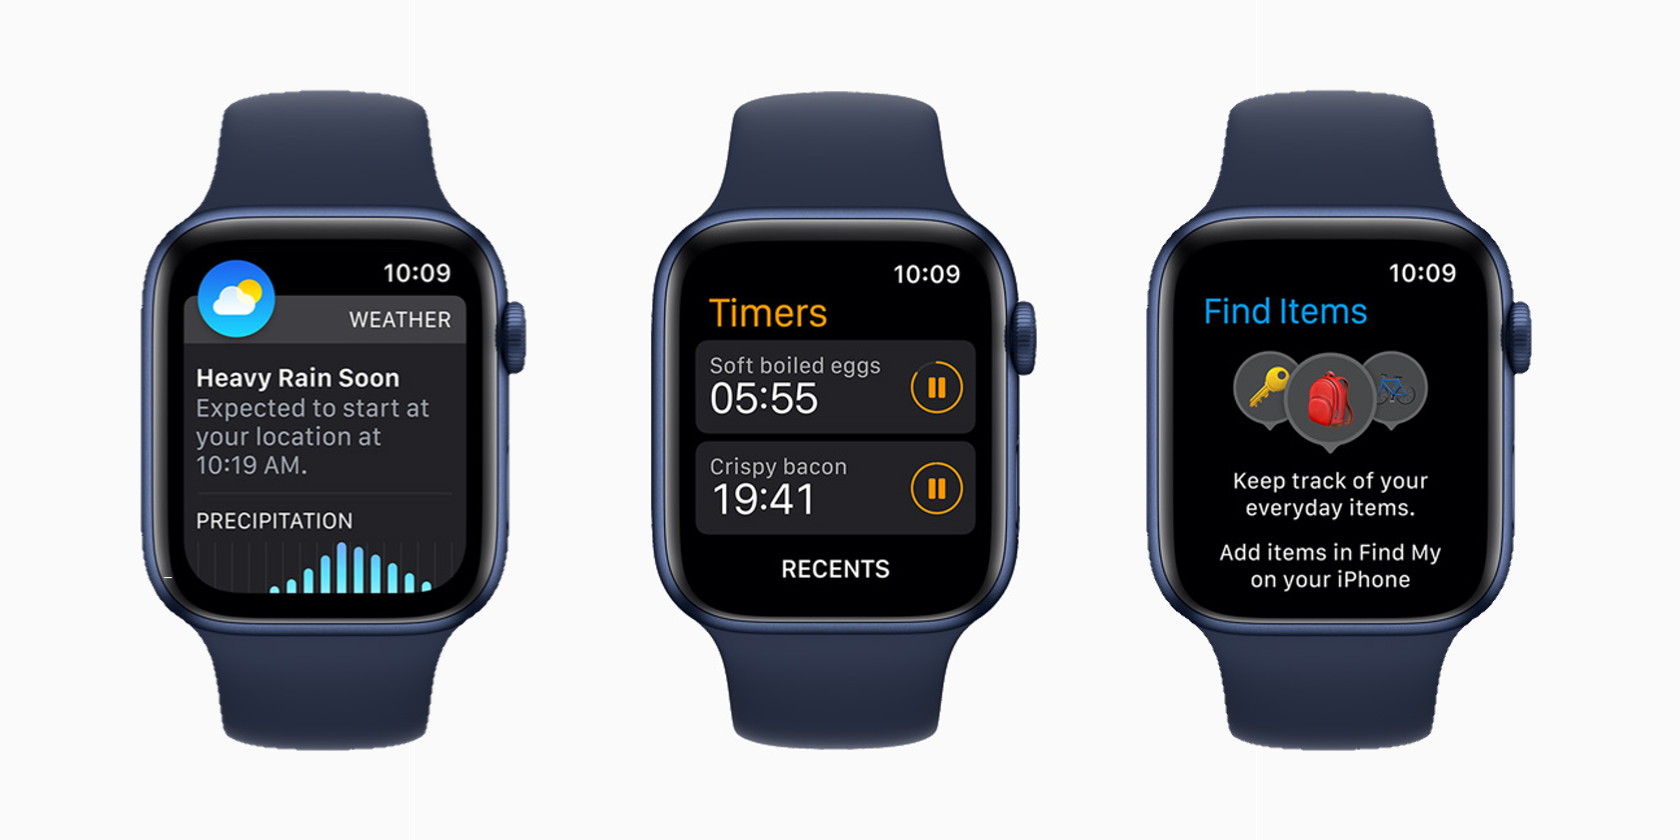 Apple Watch running watchOS 8.